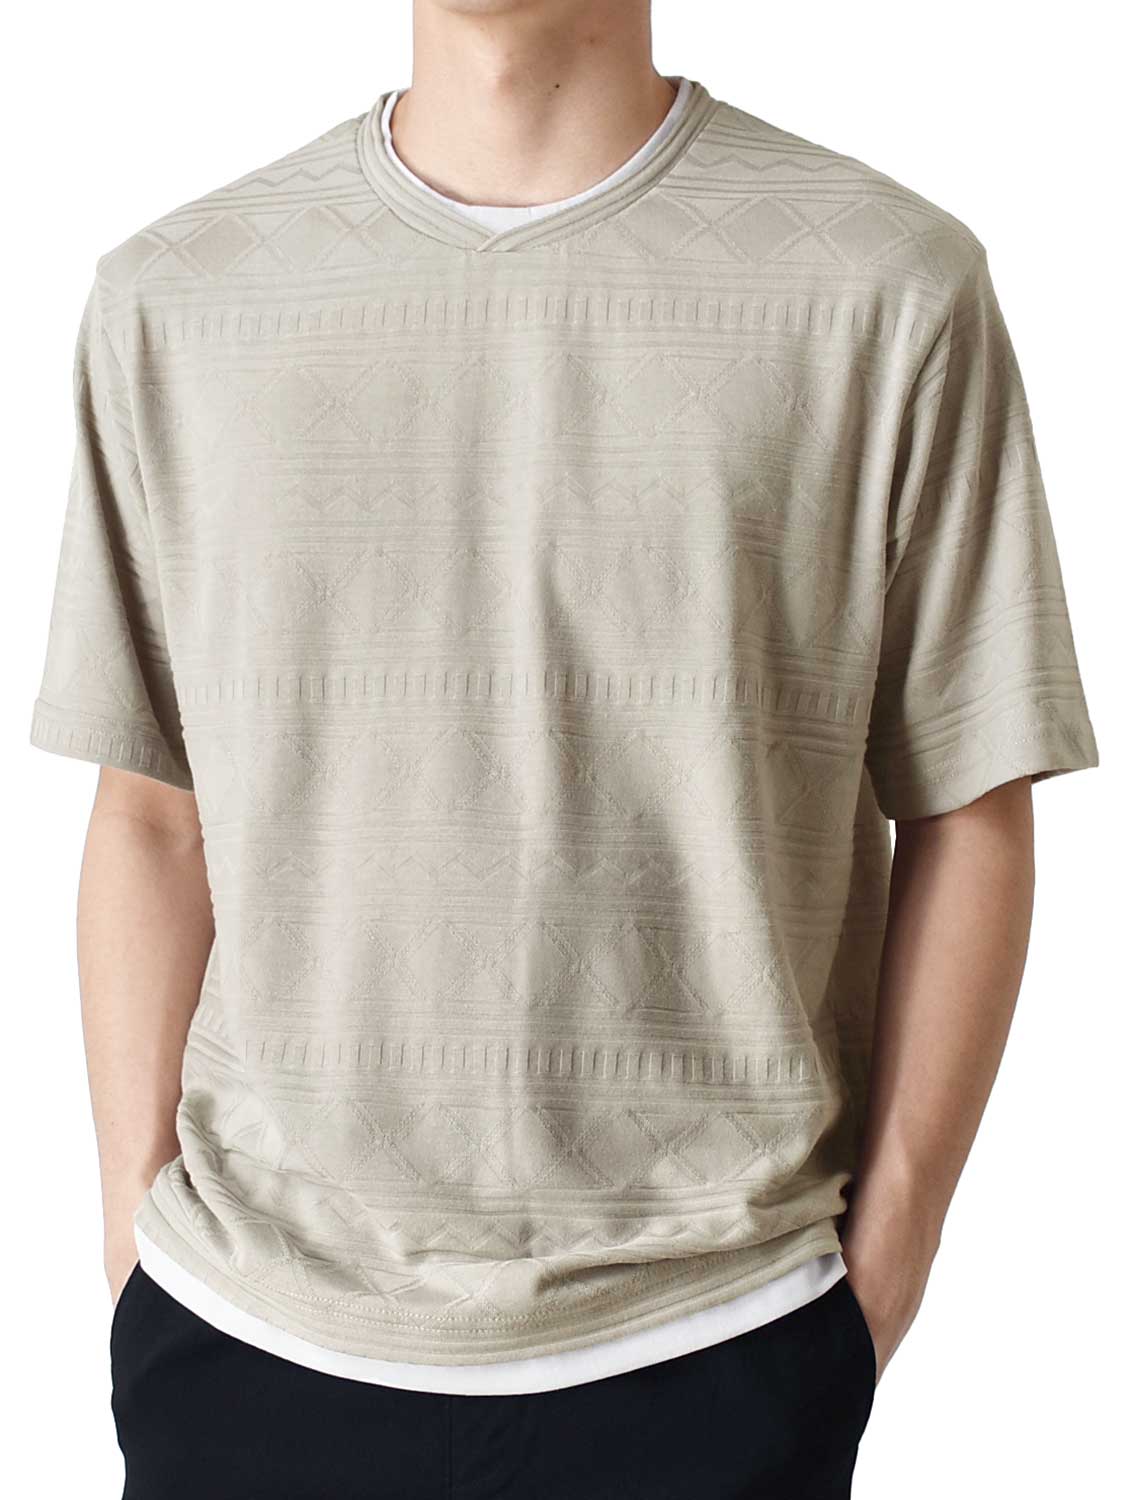 カットソー Tシャツ メンズ 総柄 ストレッチ 重ね着風 半袖 送料無料 通販Y